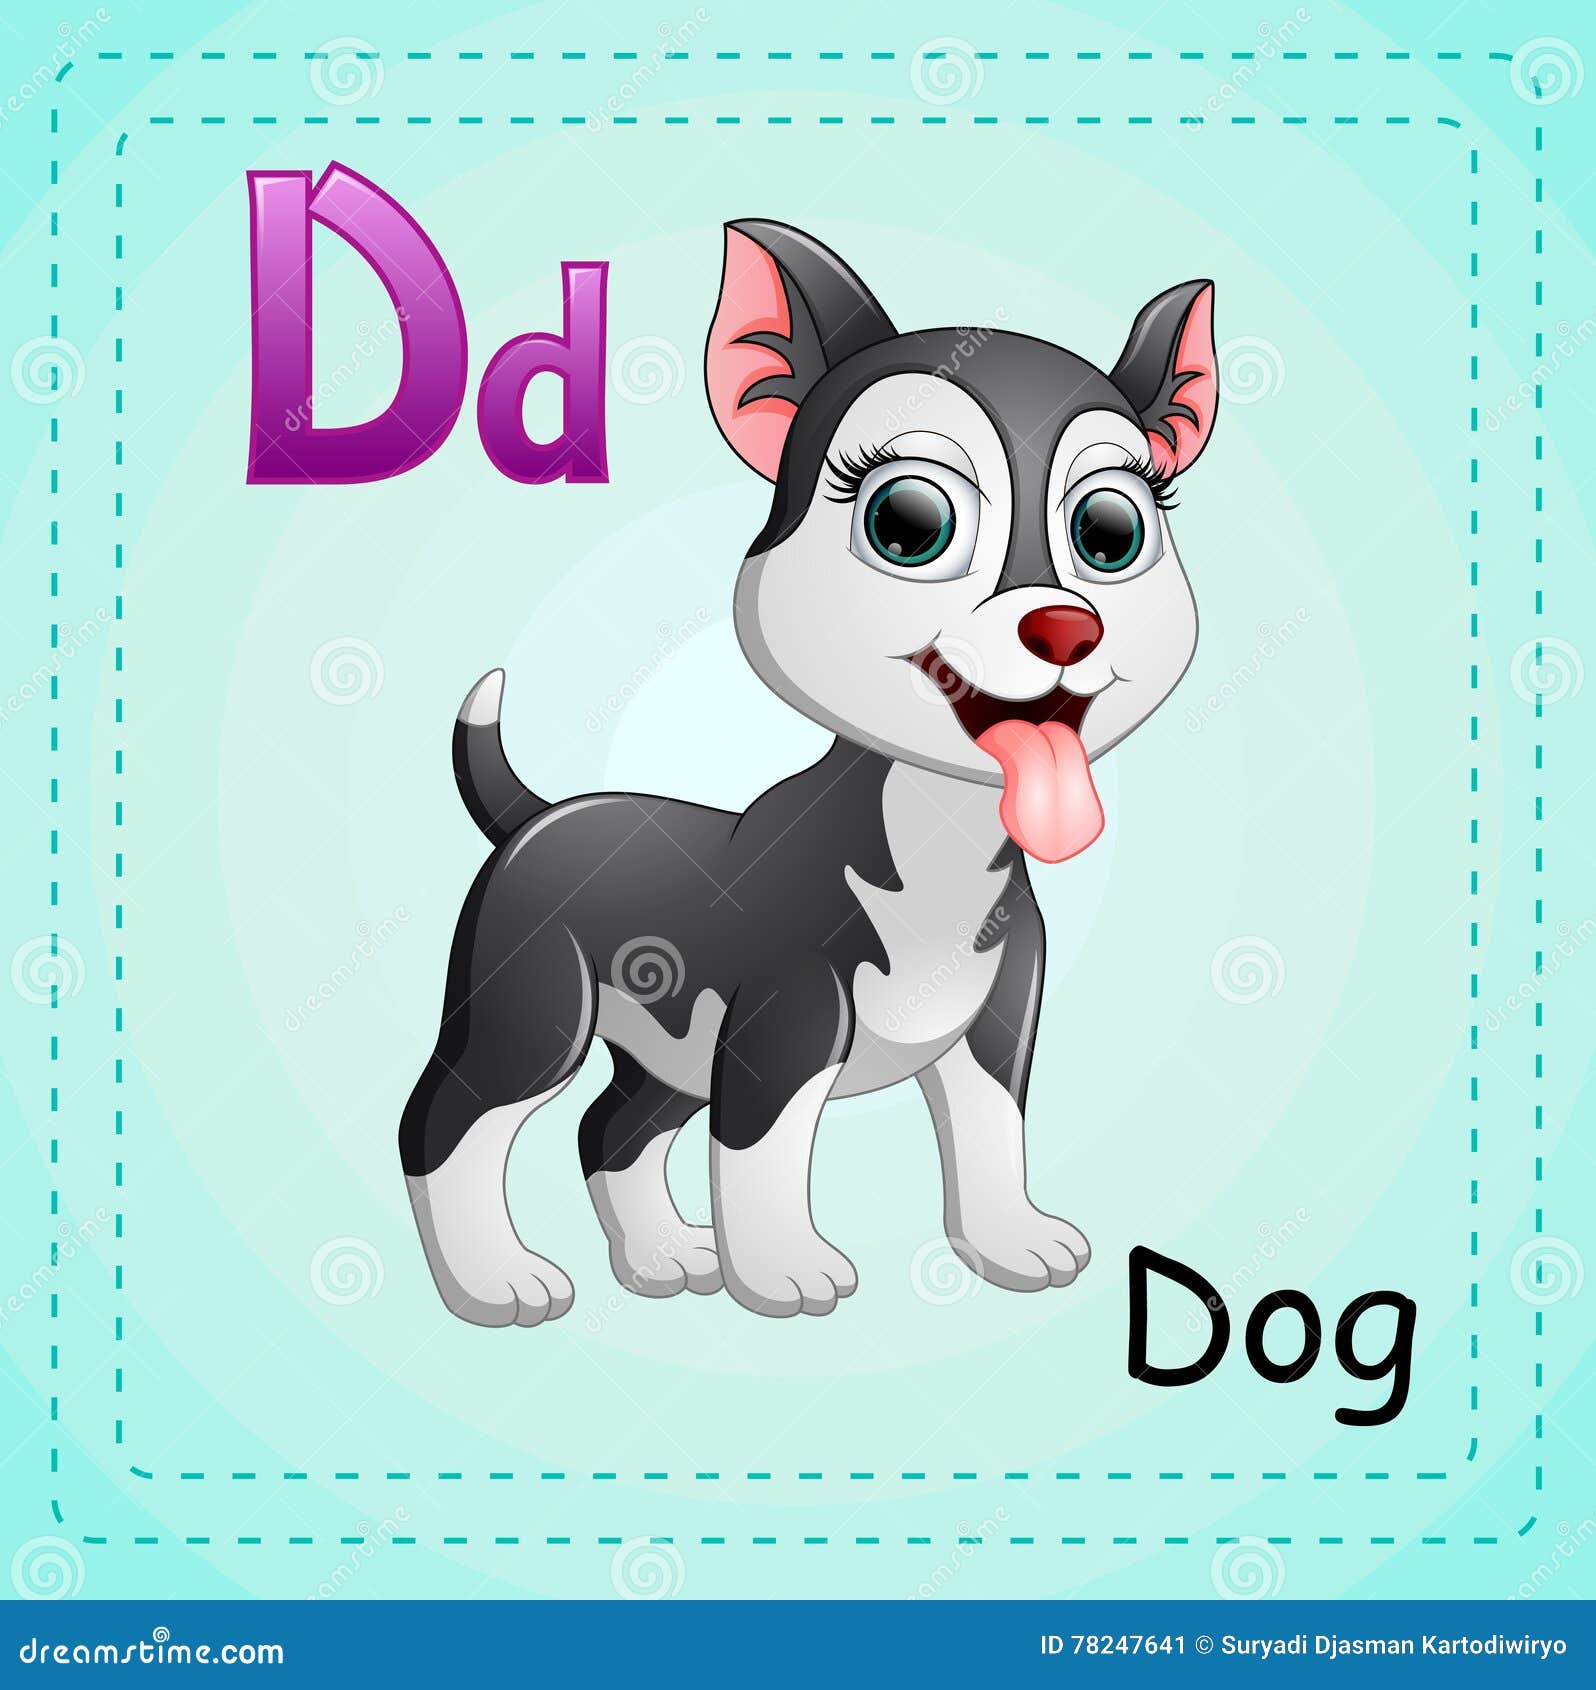 Собака на английском написать. Карточка собака на английском. Dog для детей на английском. Английские карточки d Dog. Щенок Азбука.